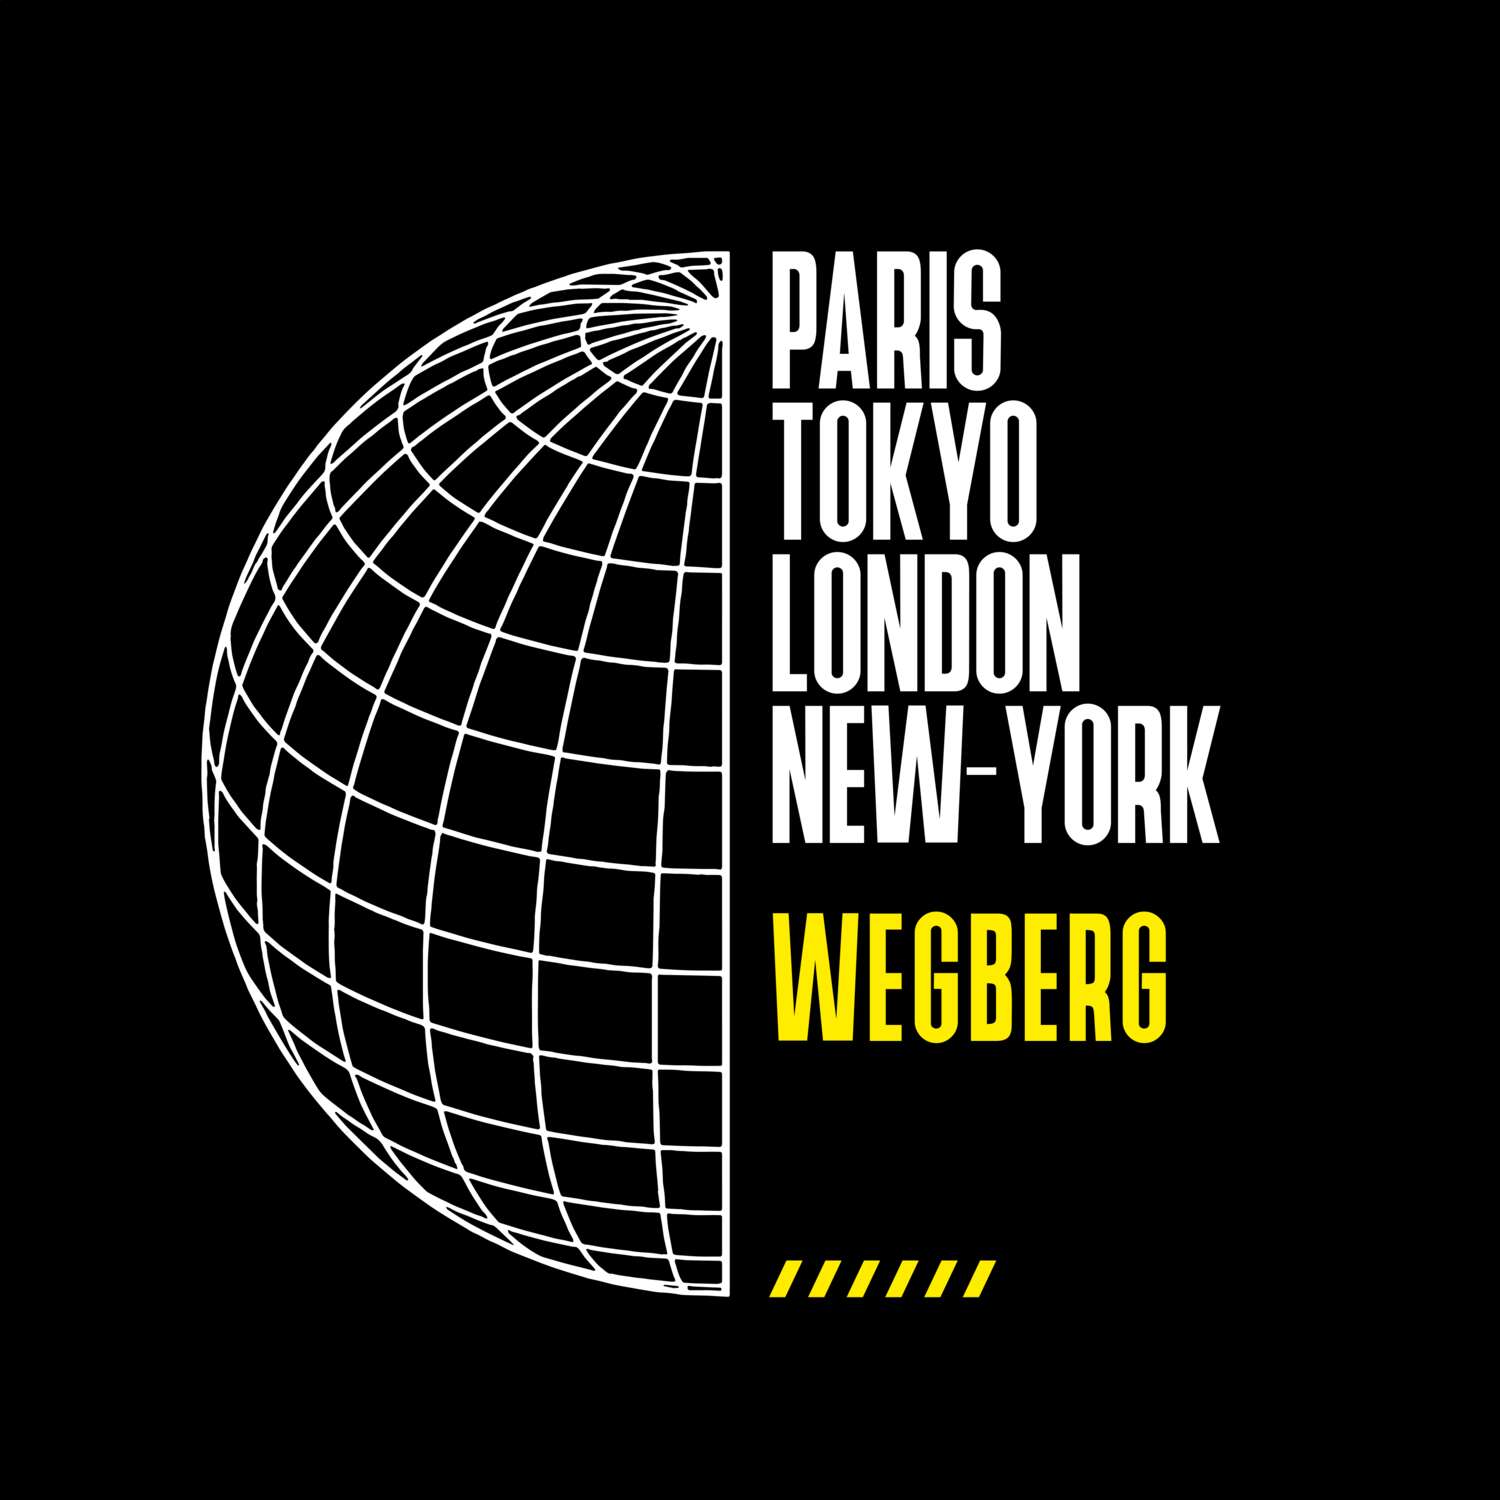 Wegberg T-Shirt »Paris Tokyo London«